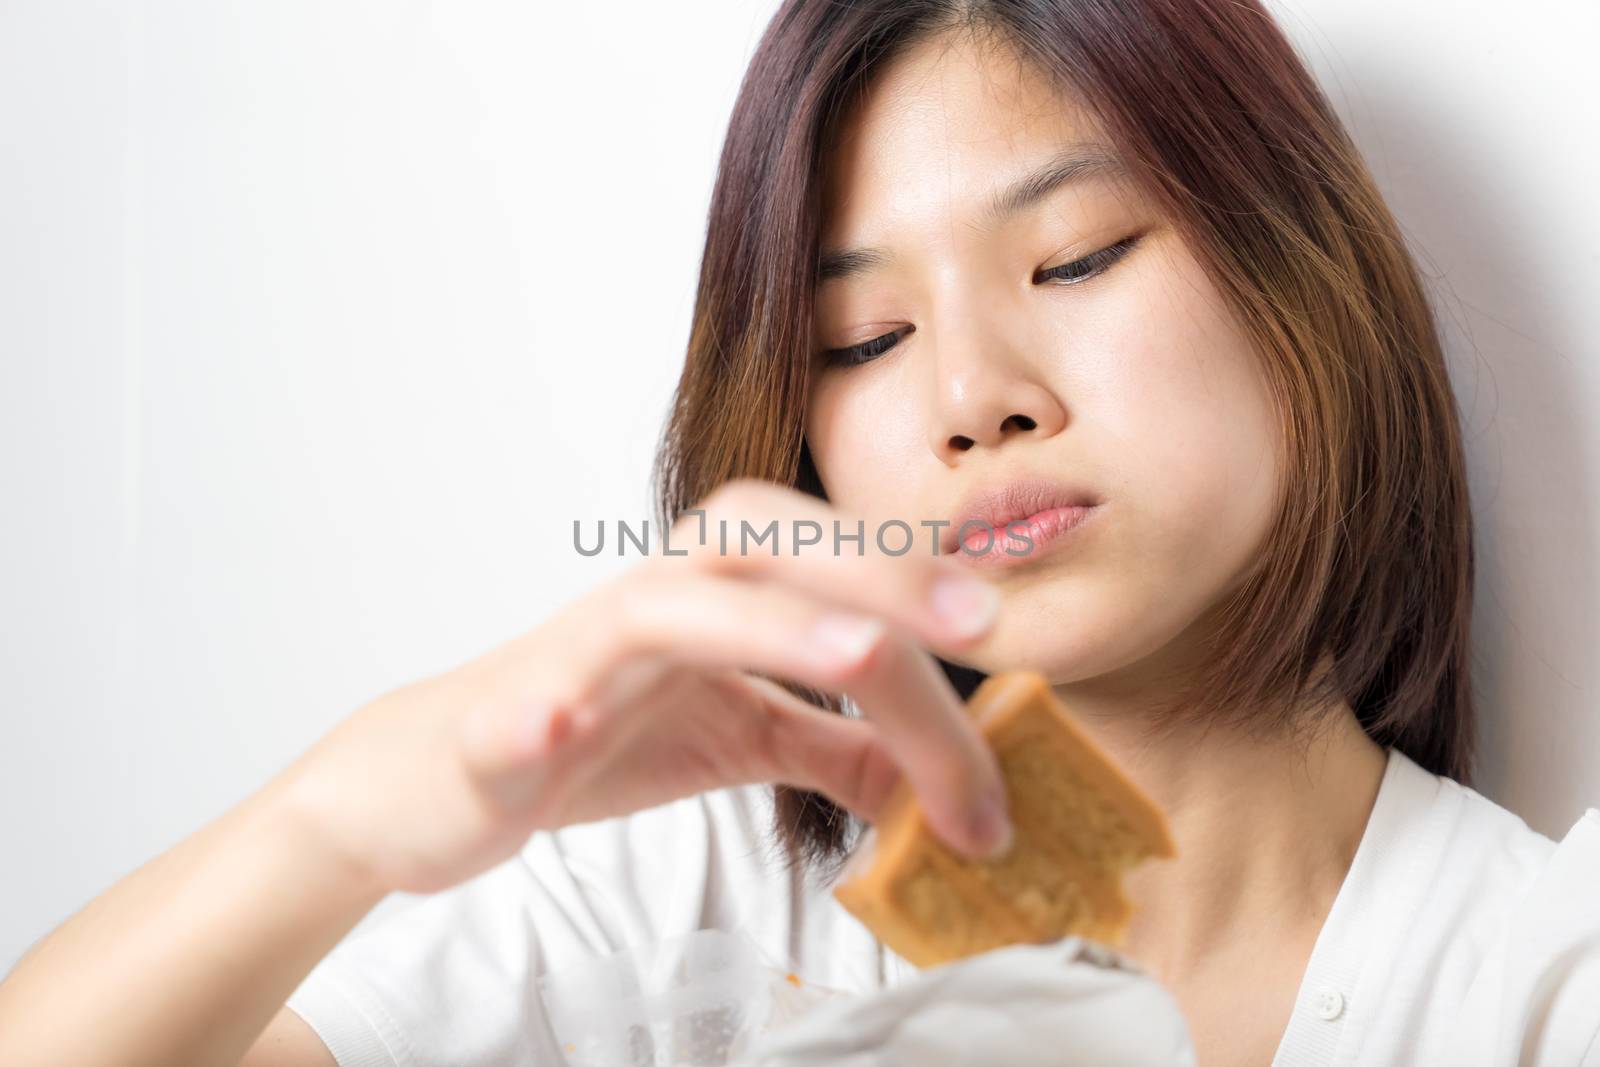 Japanese girl is enjoying the cake using her finger, on white background. by junce